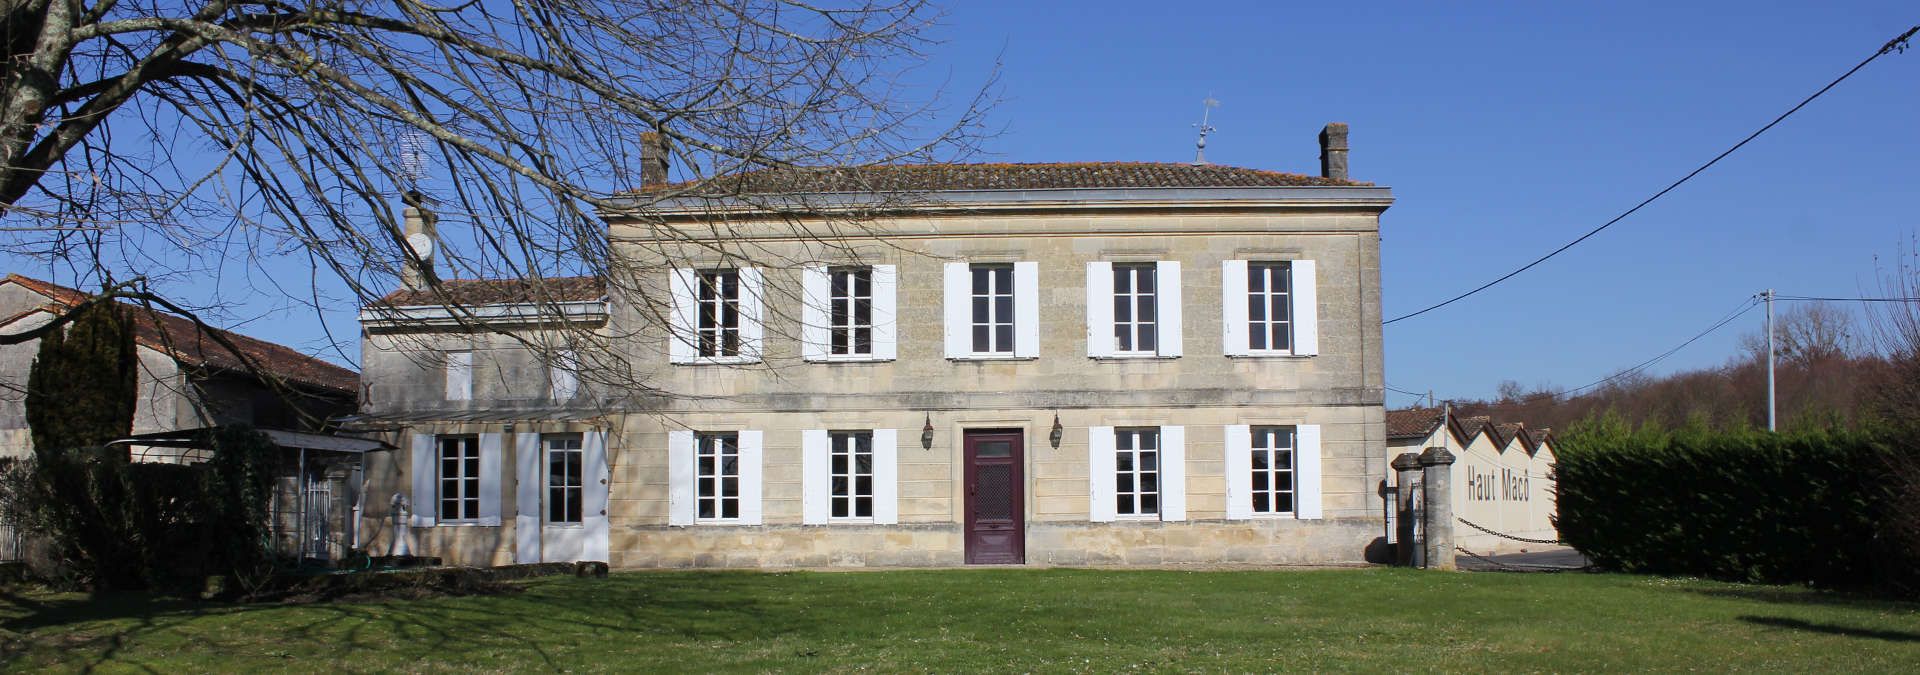 Château Haut Macô - Rue des Vignerons